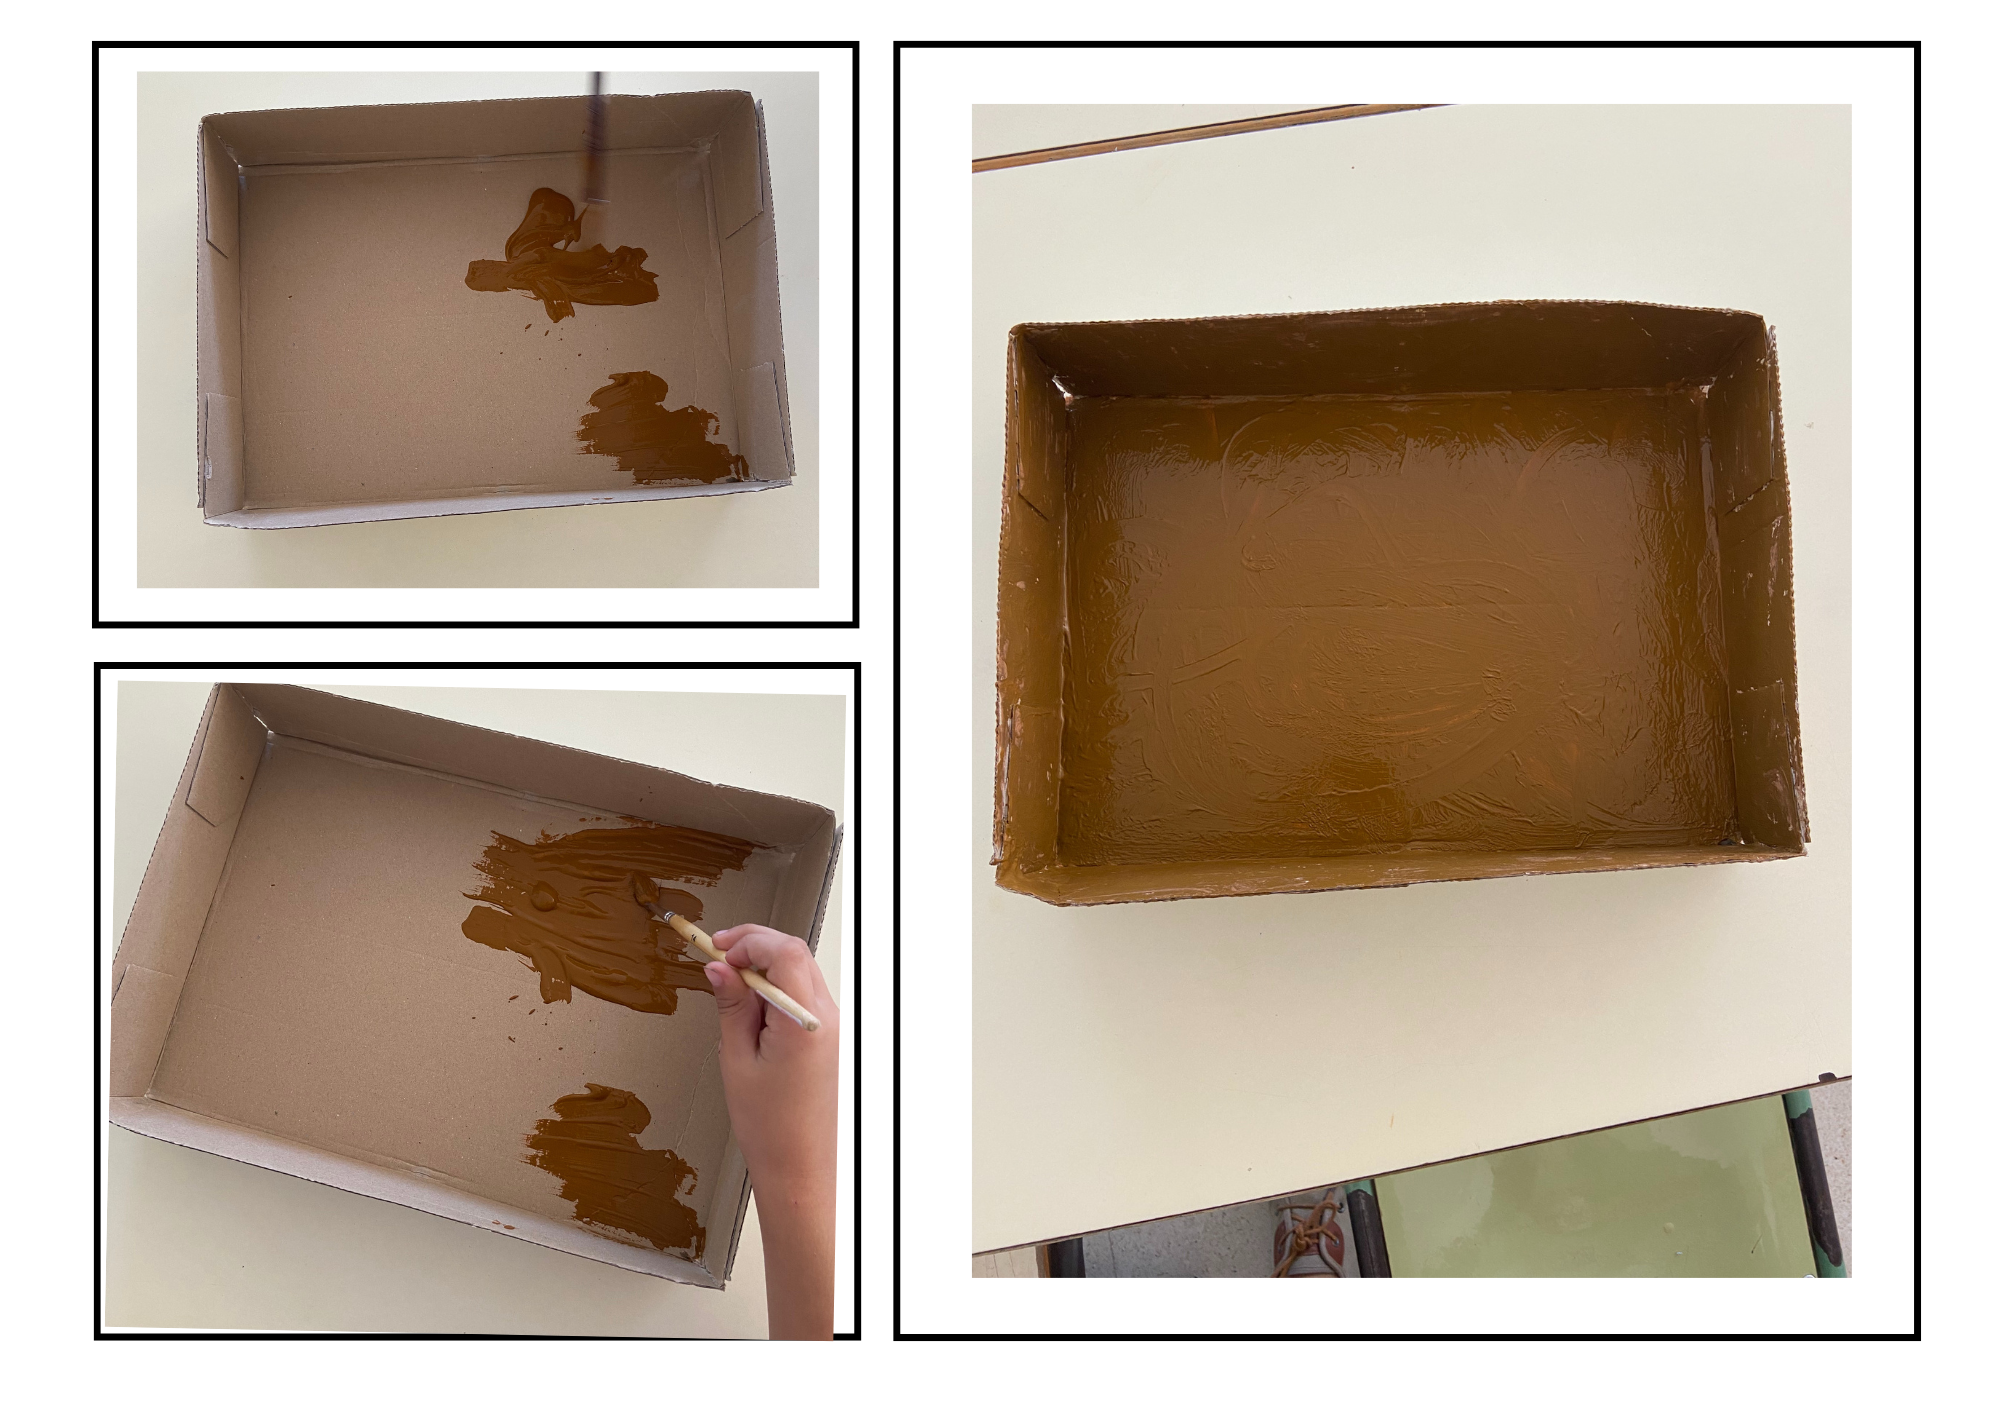 En la imagen aparecen 3 imágenes que muestran cómo pintar el fondo de la tapa de cartón, además vemos la tapa de cartón ya pintada.